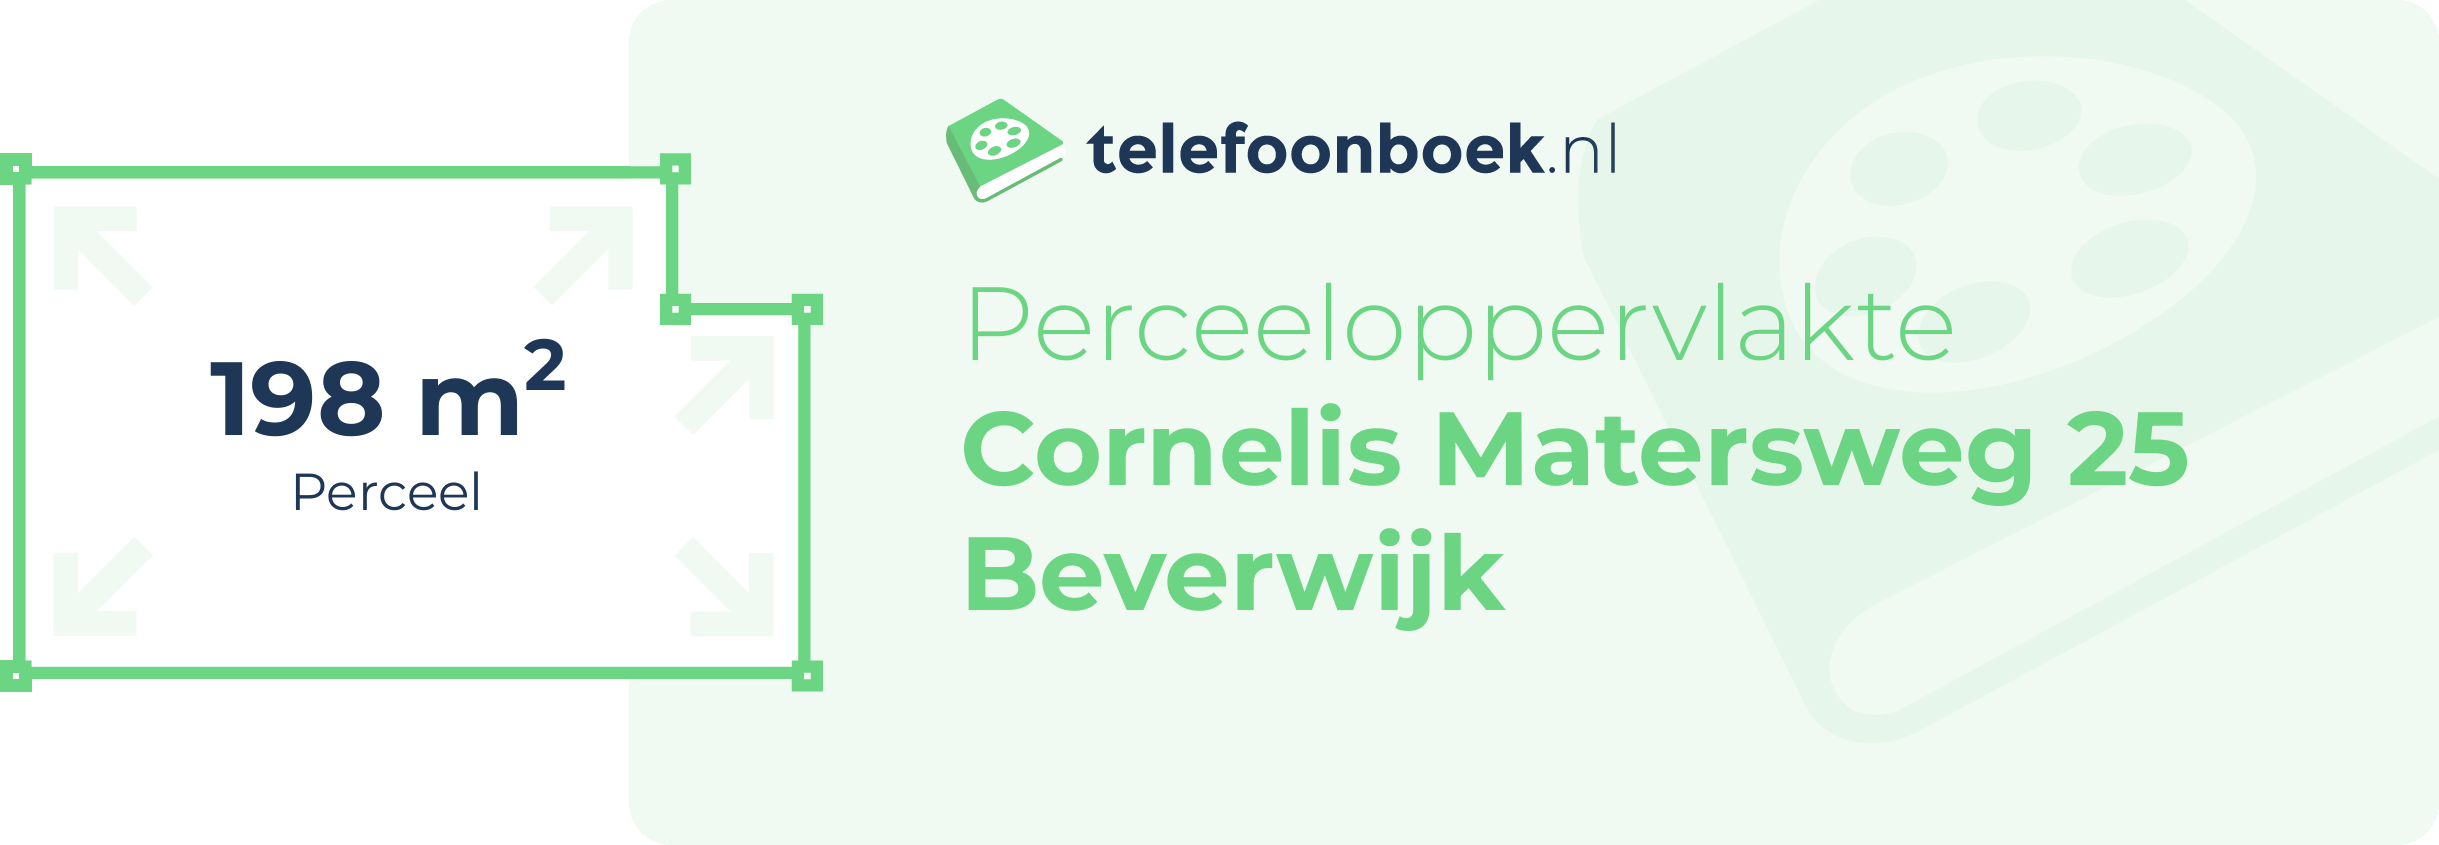 Perceeloppervlakte Cornelis Matersweg 25 Beverwijk